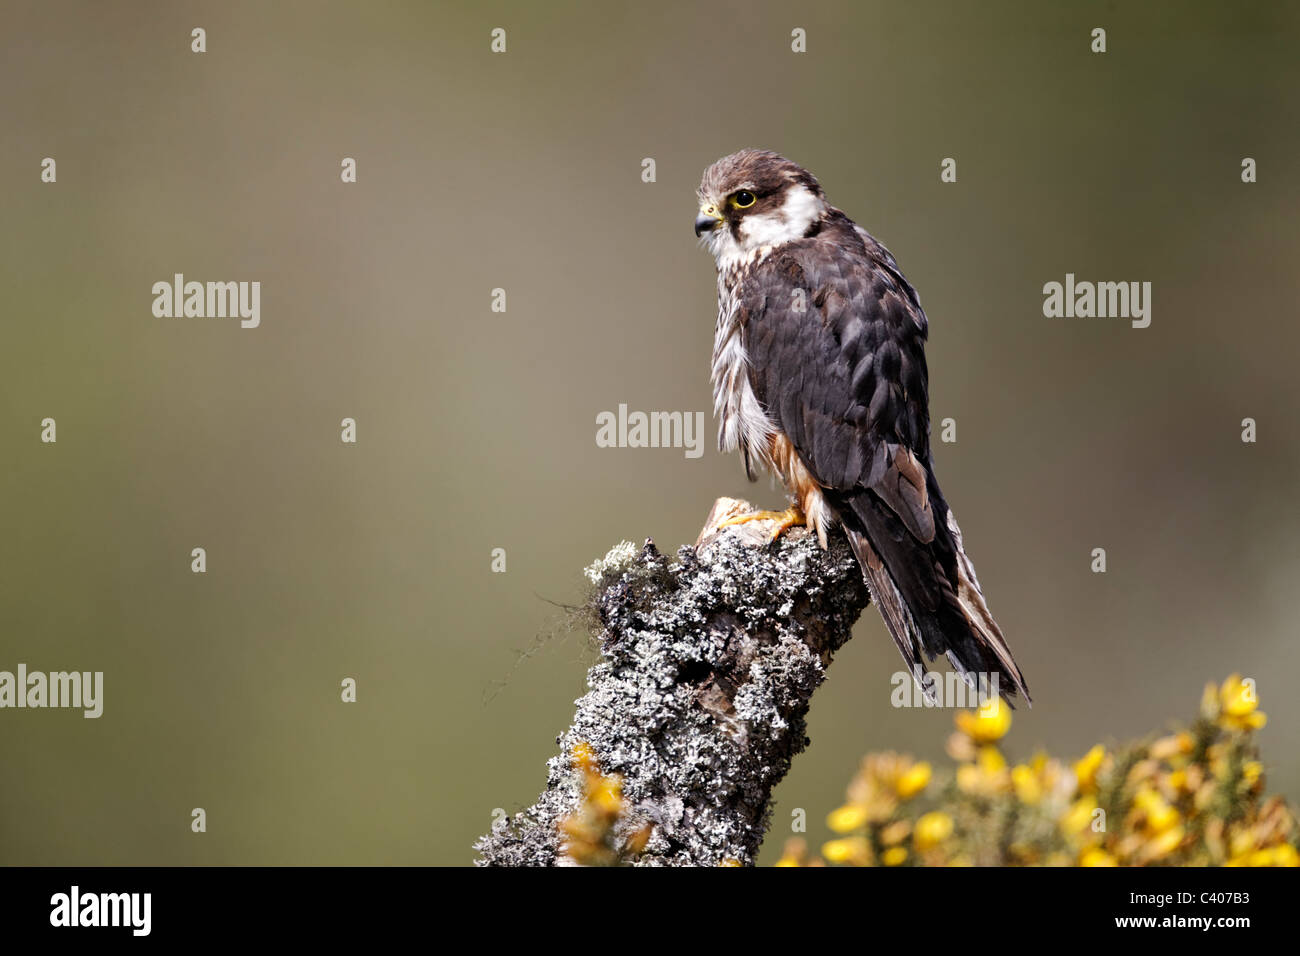 Hobby, Falco subbuteo, single captive bird on branch, Midlands, April 2011 Stock Photo